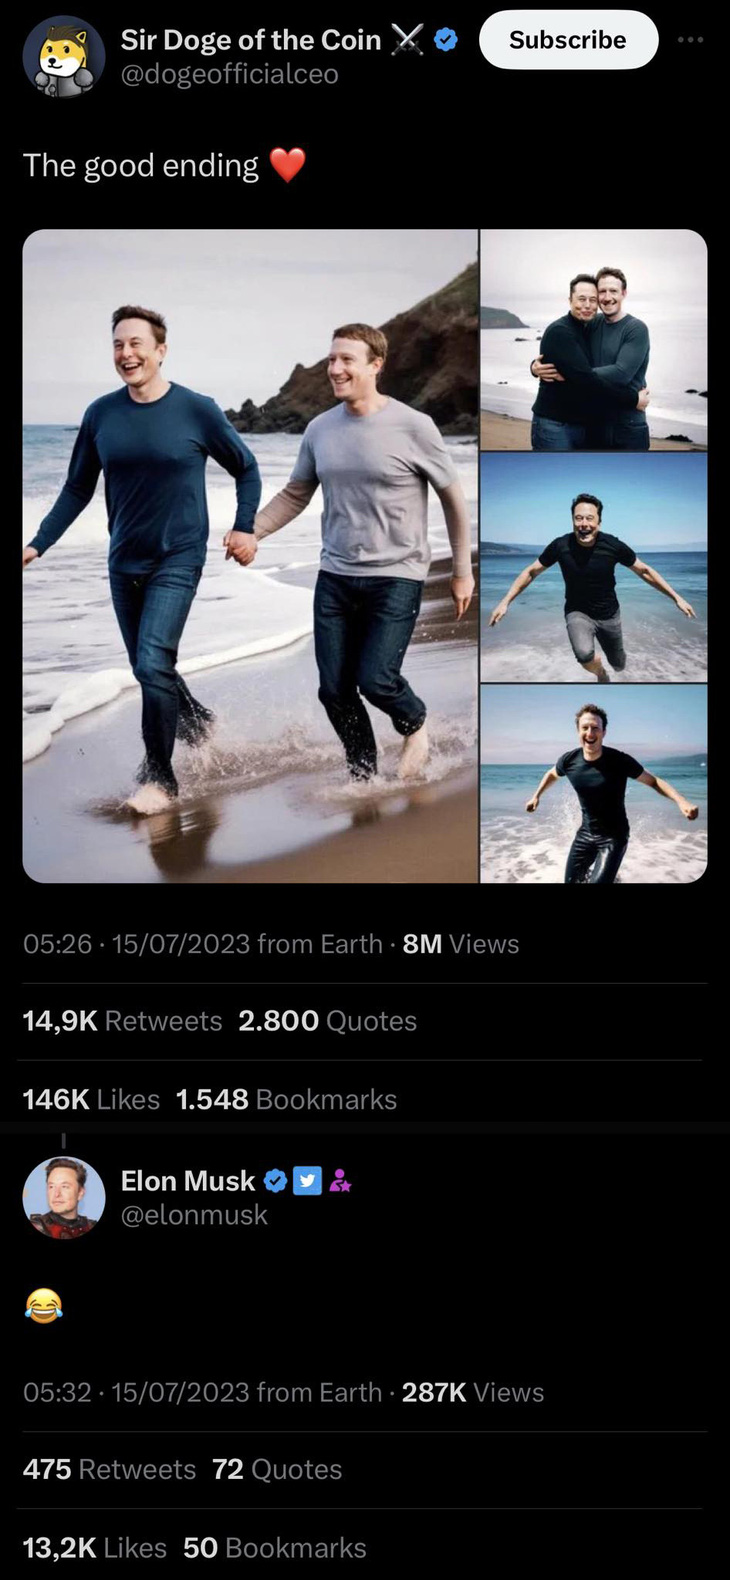 ‘Như chưa hề có cuộc chia ly’, Elon Musk nắm tay Mark dạo biển - ảnh 1